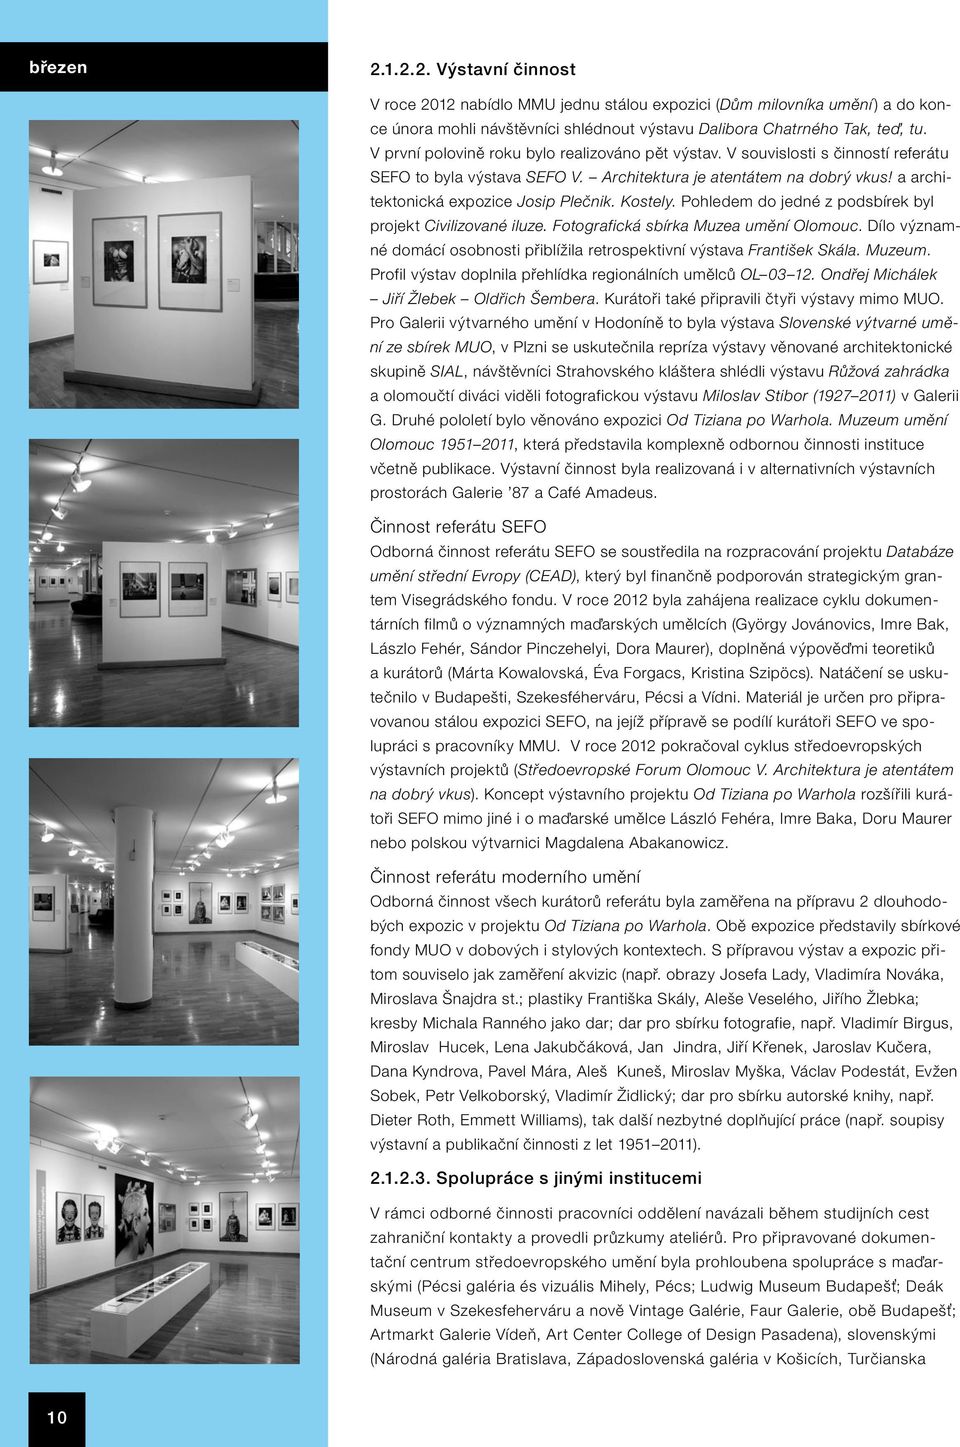 Kostely. Pohledem do jedné z podsbírek byl projekt Civilizované iluze. Fotografická sbírka Muzea umění Olomouc. Dílo významné domácí osobnosti přiblížila retrospektivní výstava František Skála.